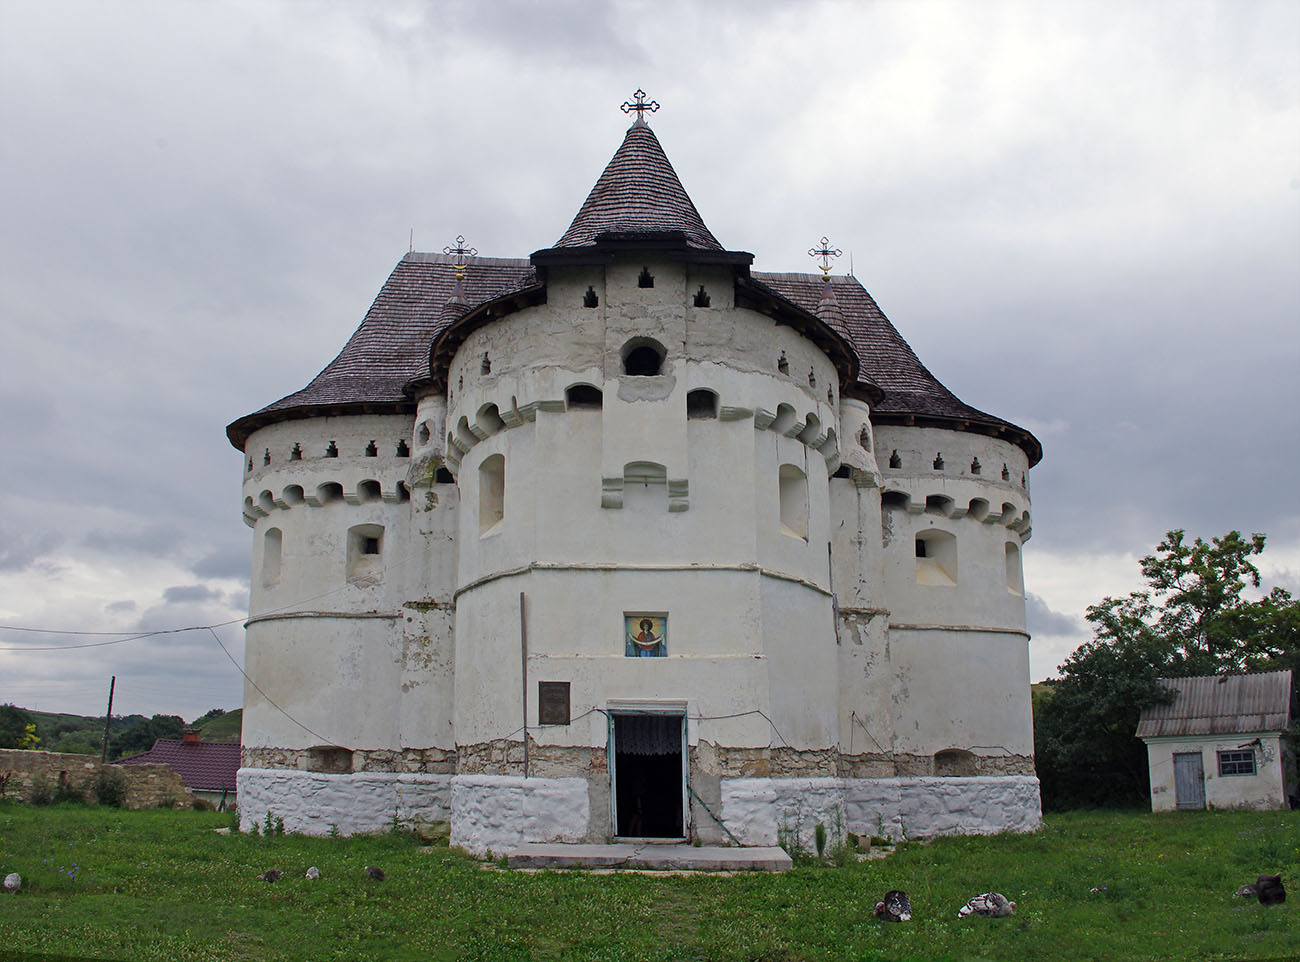 Оборонная церковь-крепость в Сутковцах церковь крепость украина сутковцы стены средневековье